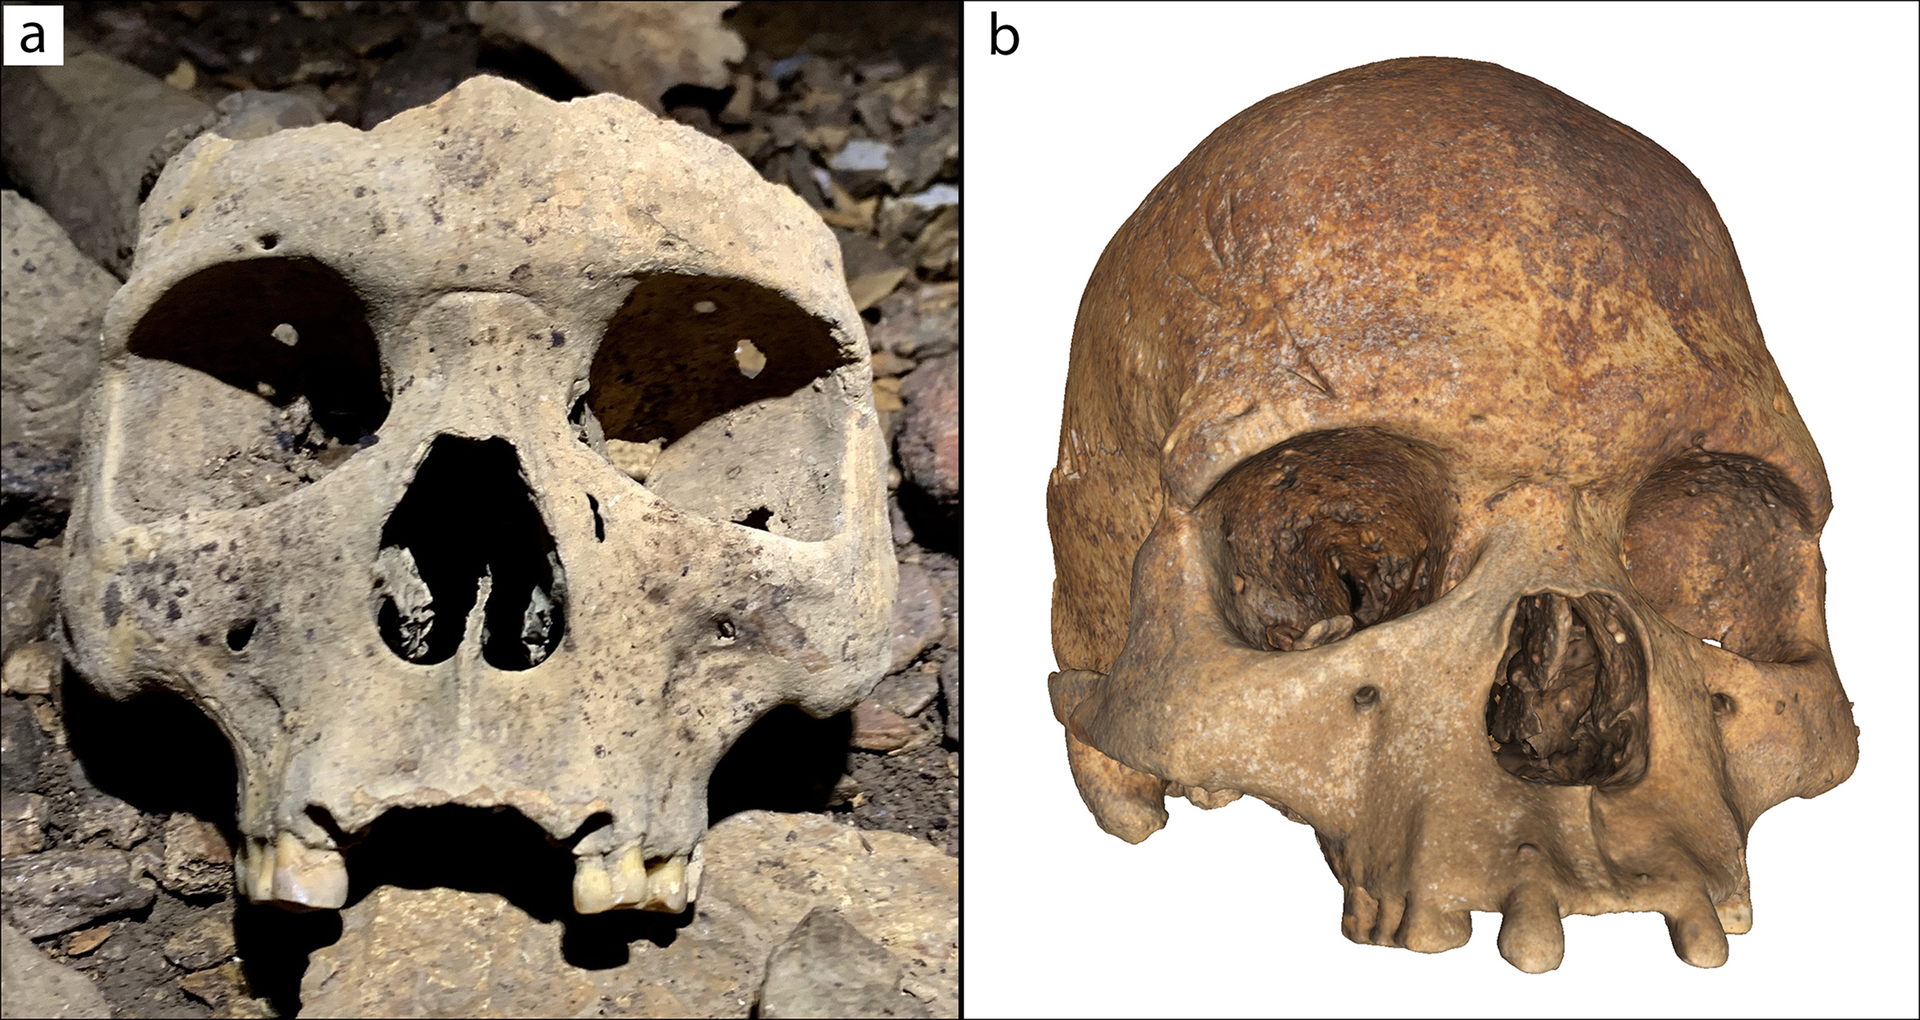 Crânios misteriosos de 500 anos com modificações faciais são descobertos em caverna no Gabão (FOTOS) - Sputnik Brasil, 1920, 11.07.2021